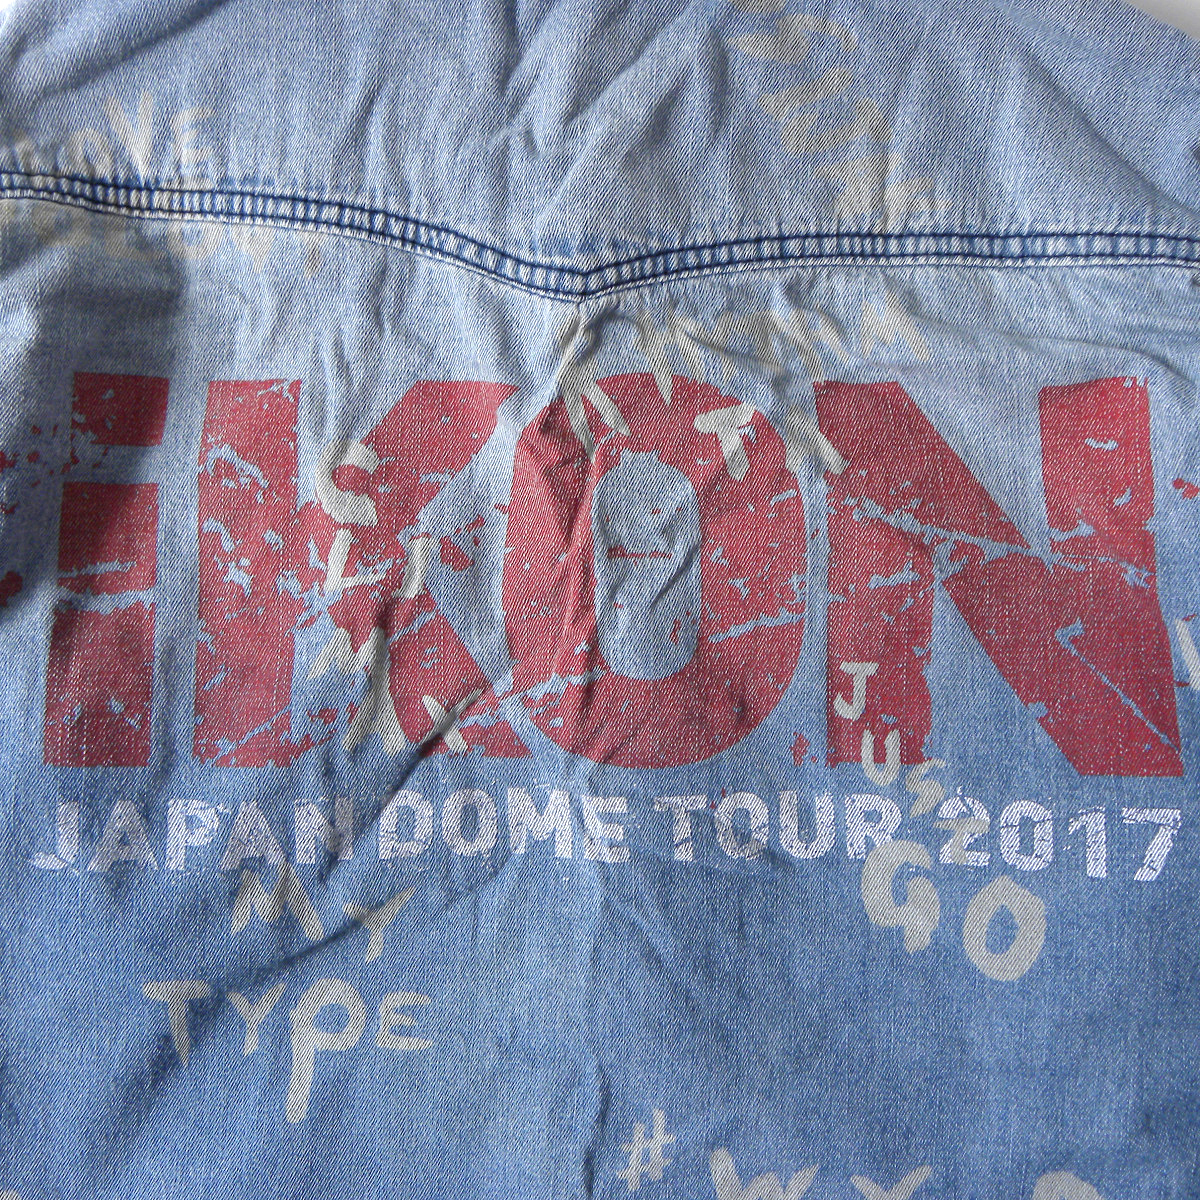  Icon iKON JAPAN DOME TOUR 2017 принт Denim рубашка в ковбойском стиле длинный рукав Корея идол товары Mei Beck s производства m0609-7